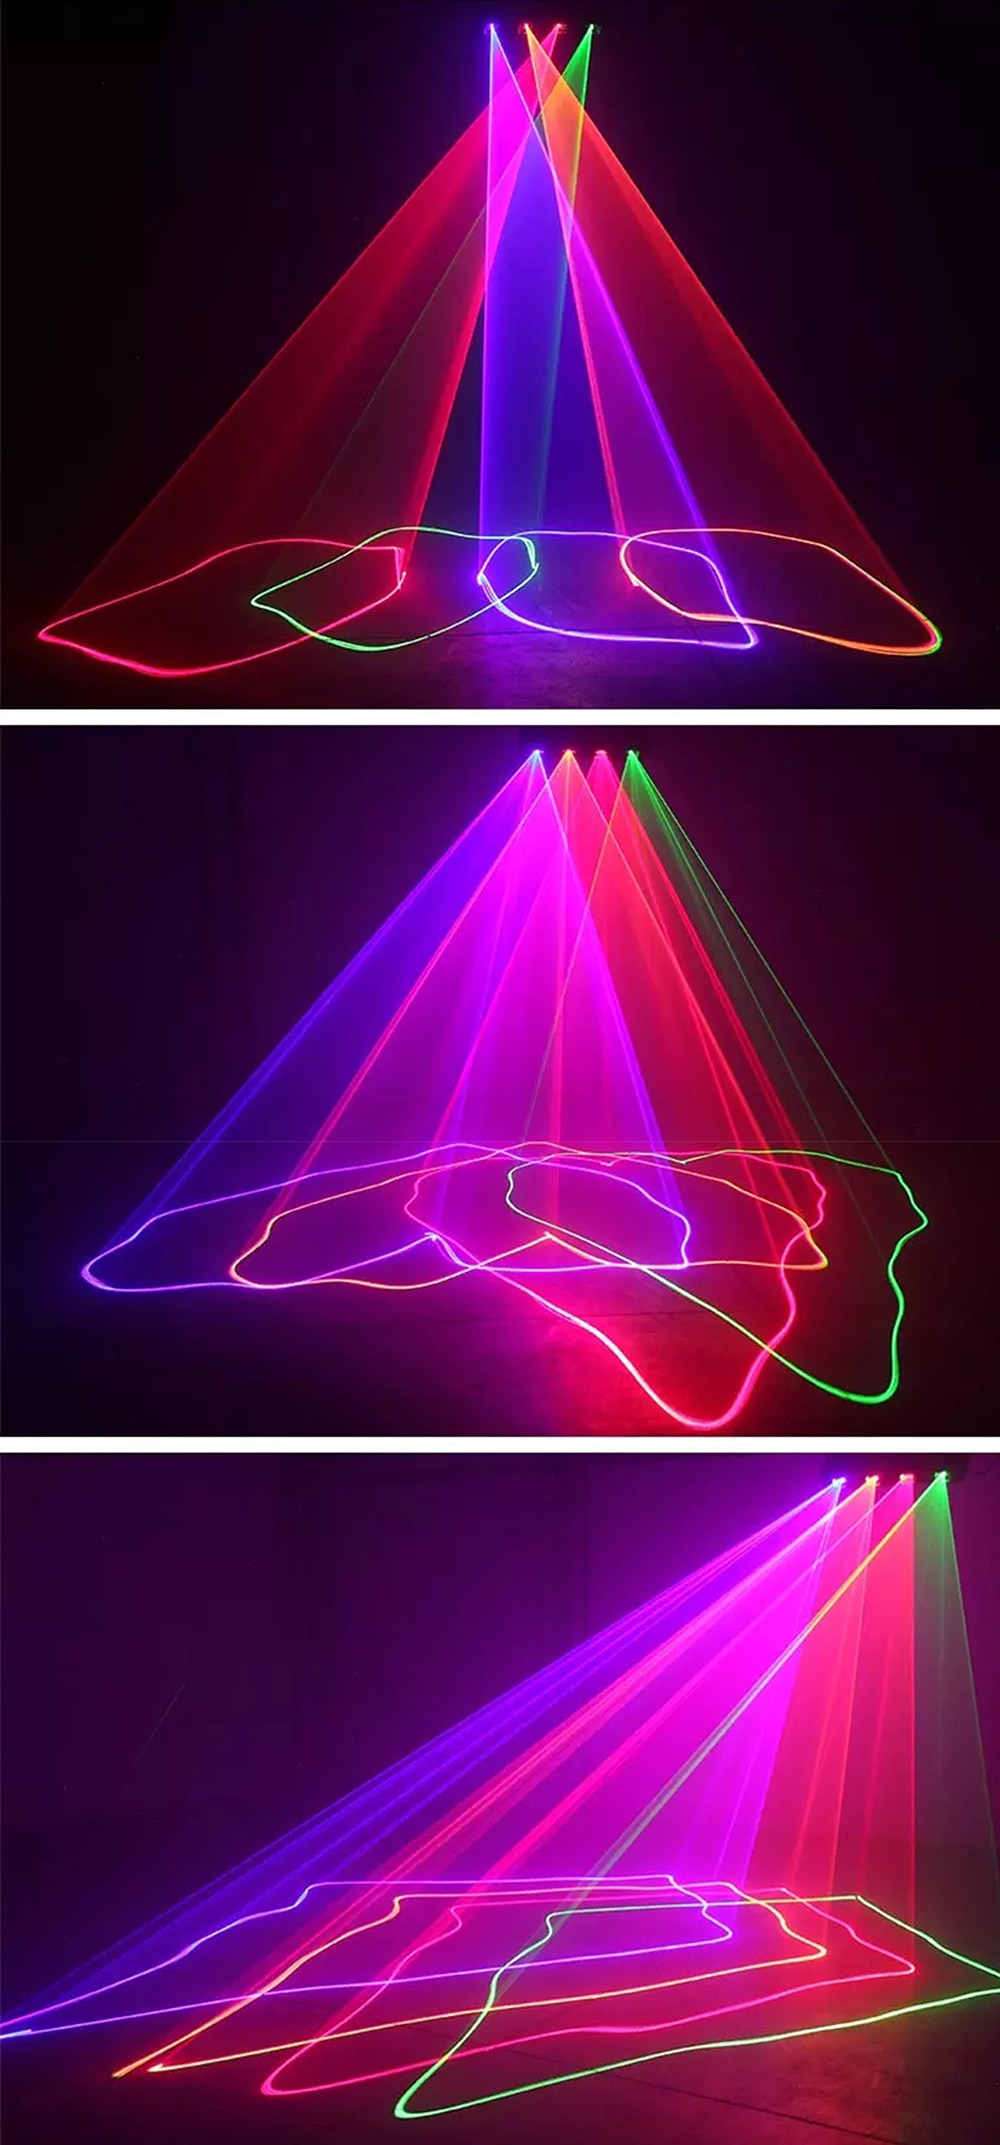 8 eye scan laser light rgb 3-color moving head stage dj party laser rain laser light